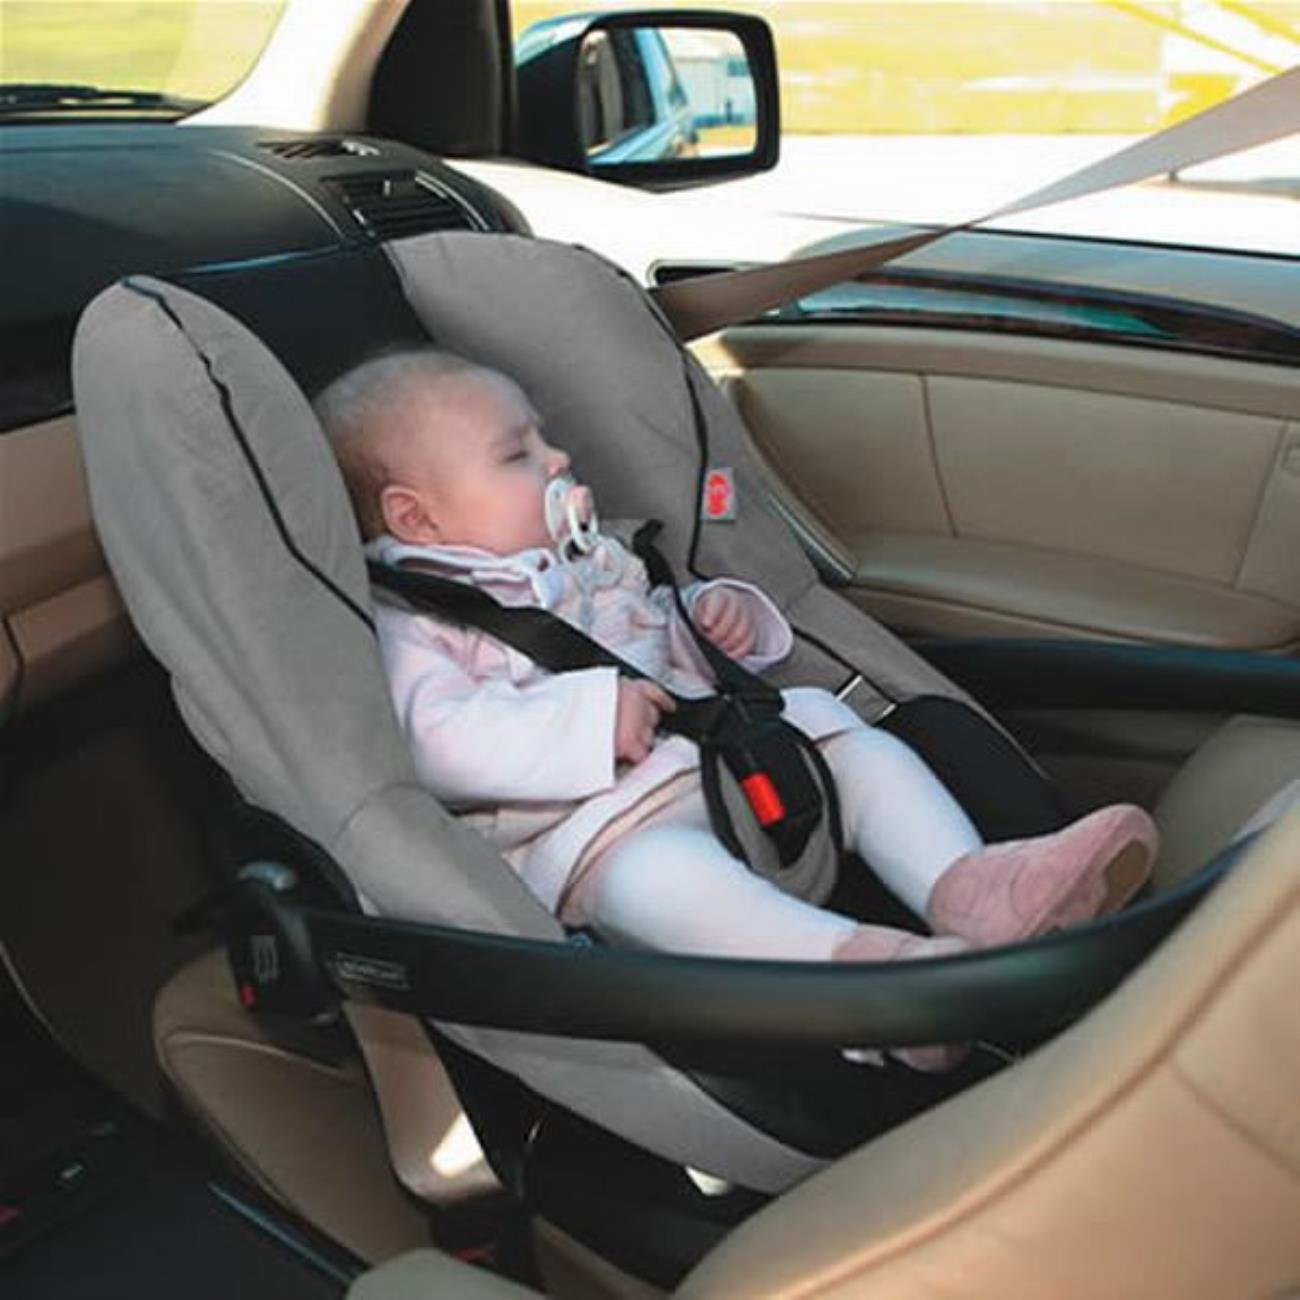 Люлька до скольки месяцев. Автолюлька в машине. Автолюлька для новорожденных. Детское кресло для автомобиля 0+. Автолюлька для новорожденных в машине.